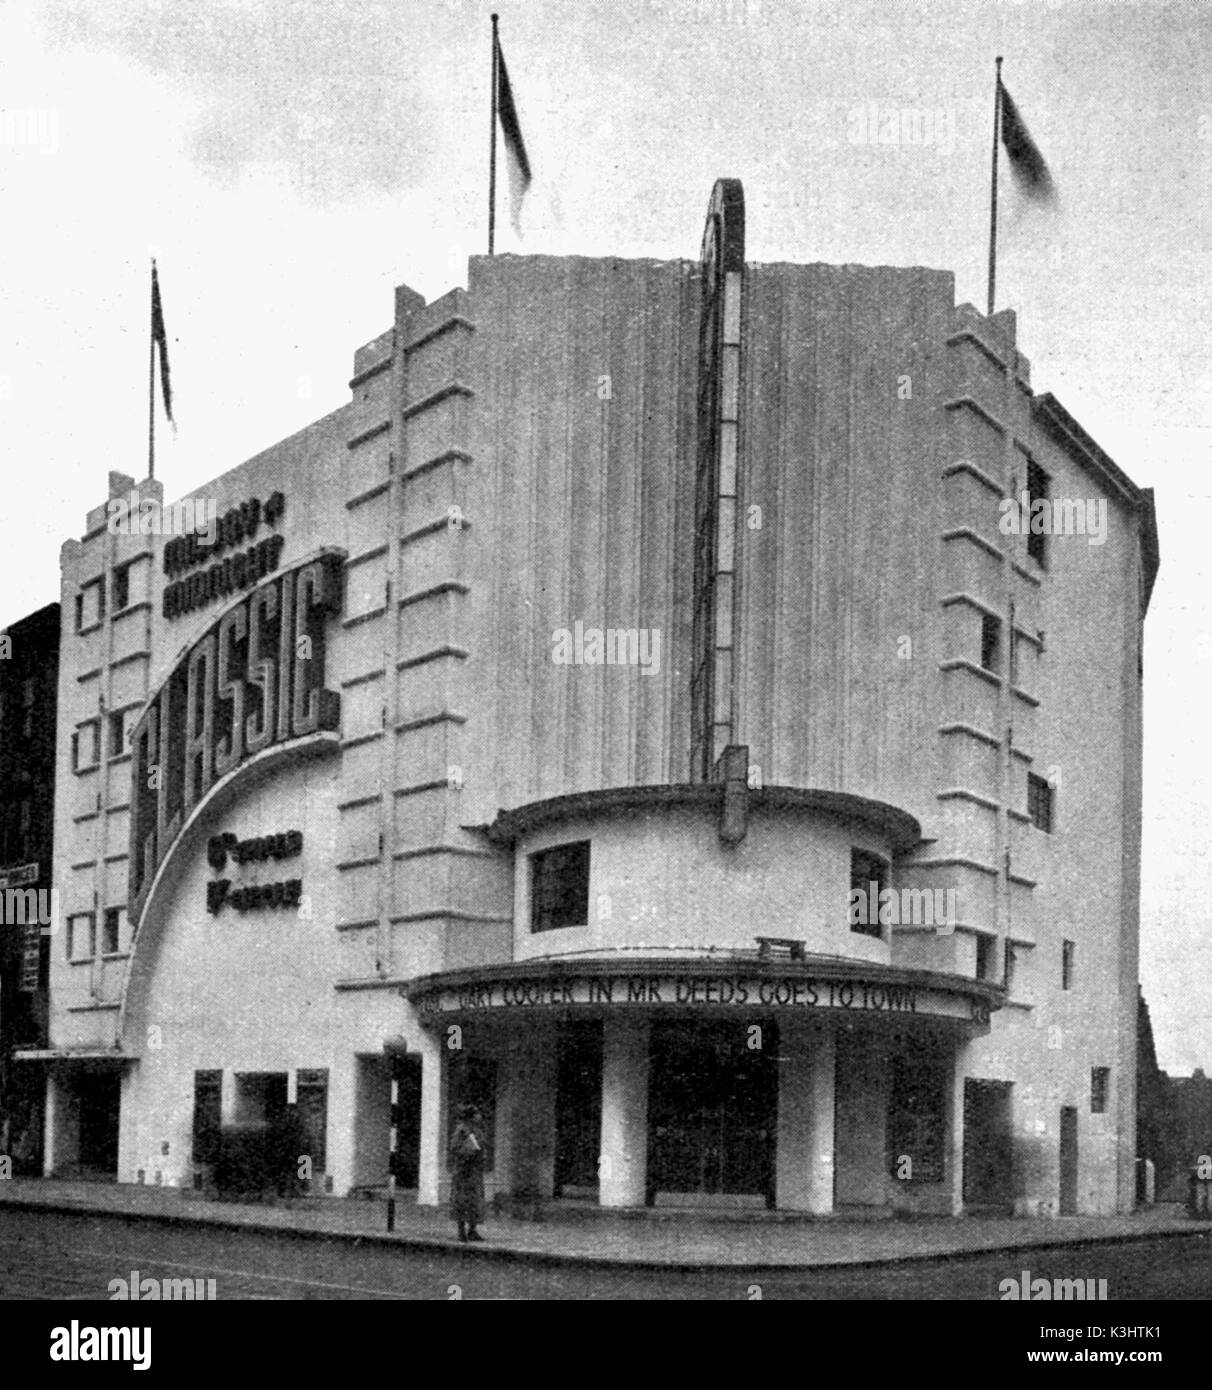 CLASSIC CINEMA, DALSTON - raffigurata nel 1938 più tardi conosciuto come il Rio CLASSIC CINEMA, DALSTON - raffigurata nel 1938 - più tardi conosciuto come il Rio Foto Stock